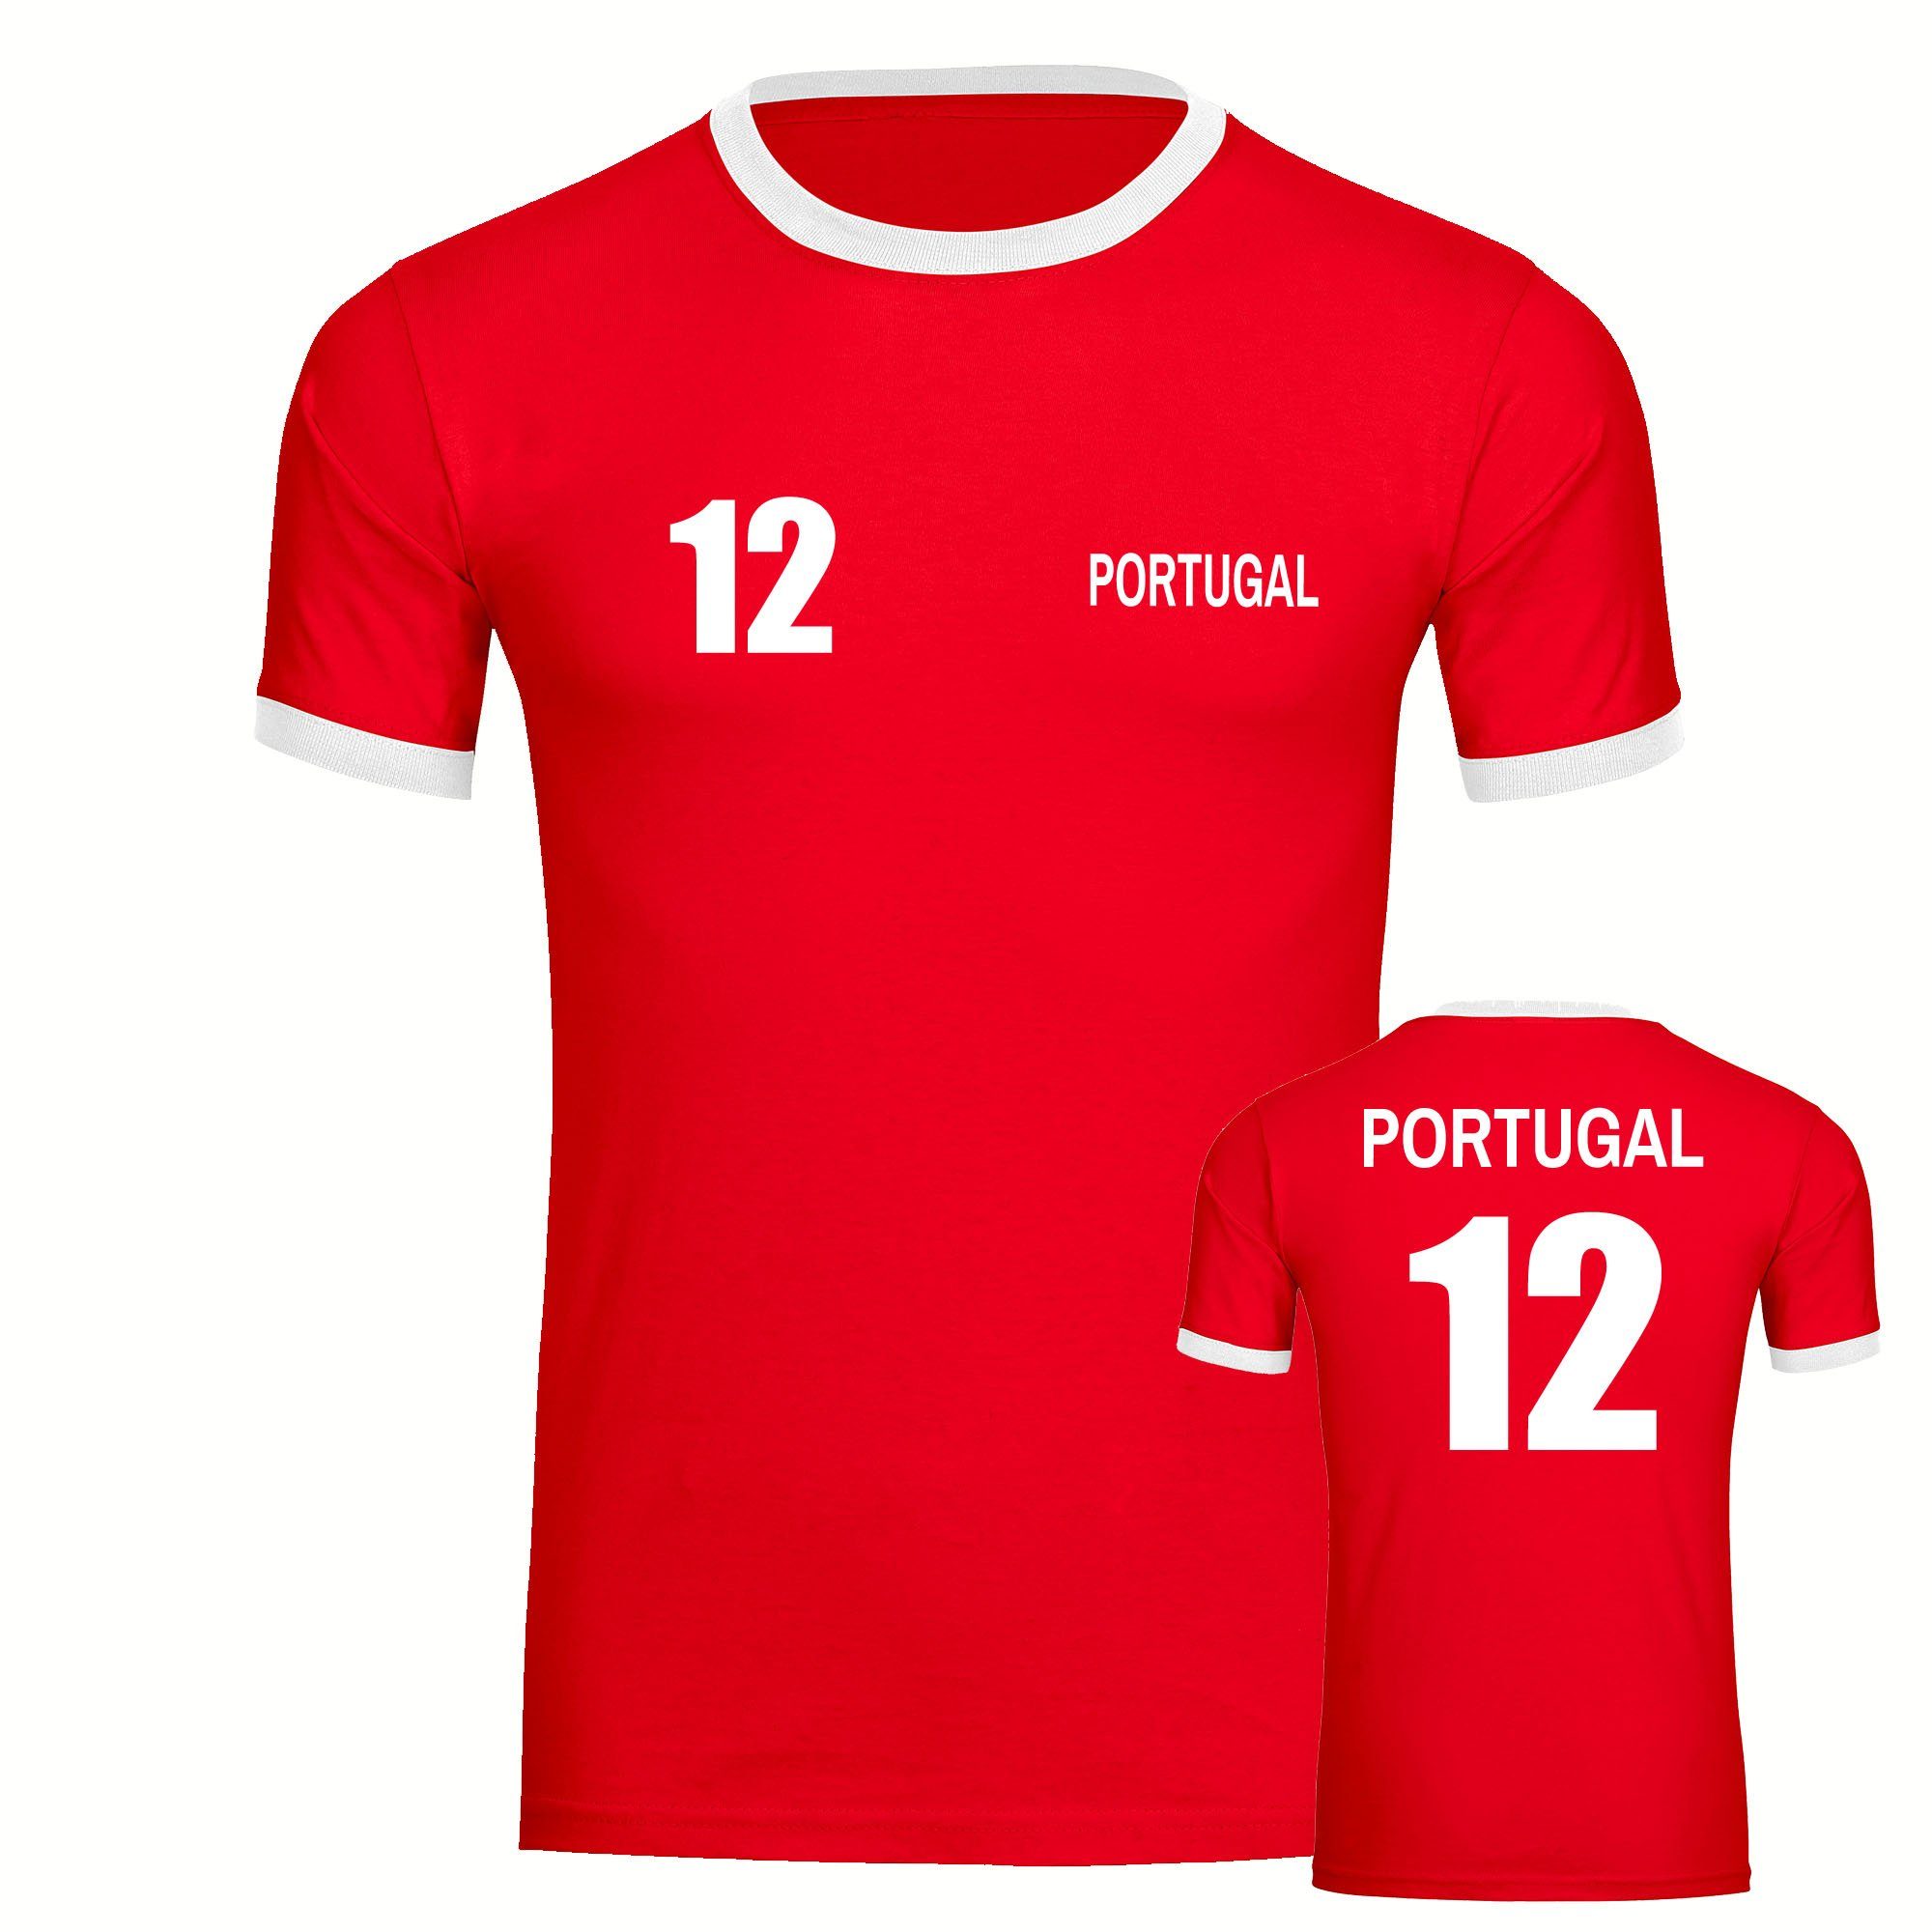 multifanshop T-Shirt Kontrast Portugal - Trikot 12 - Männer